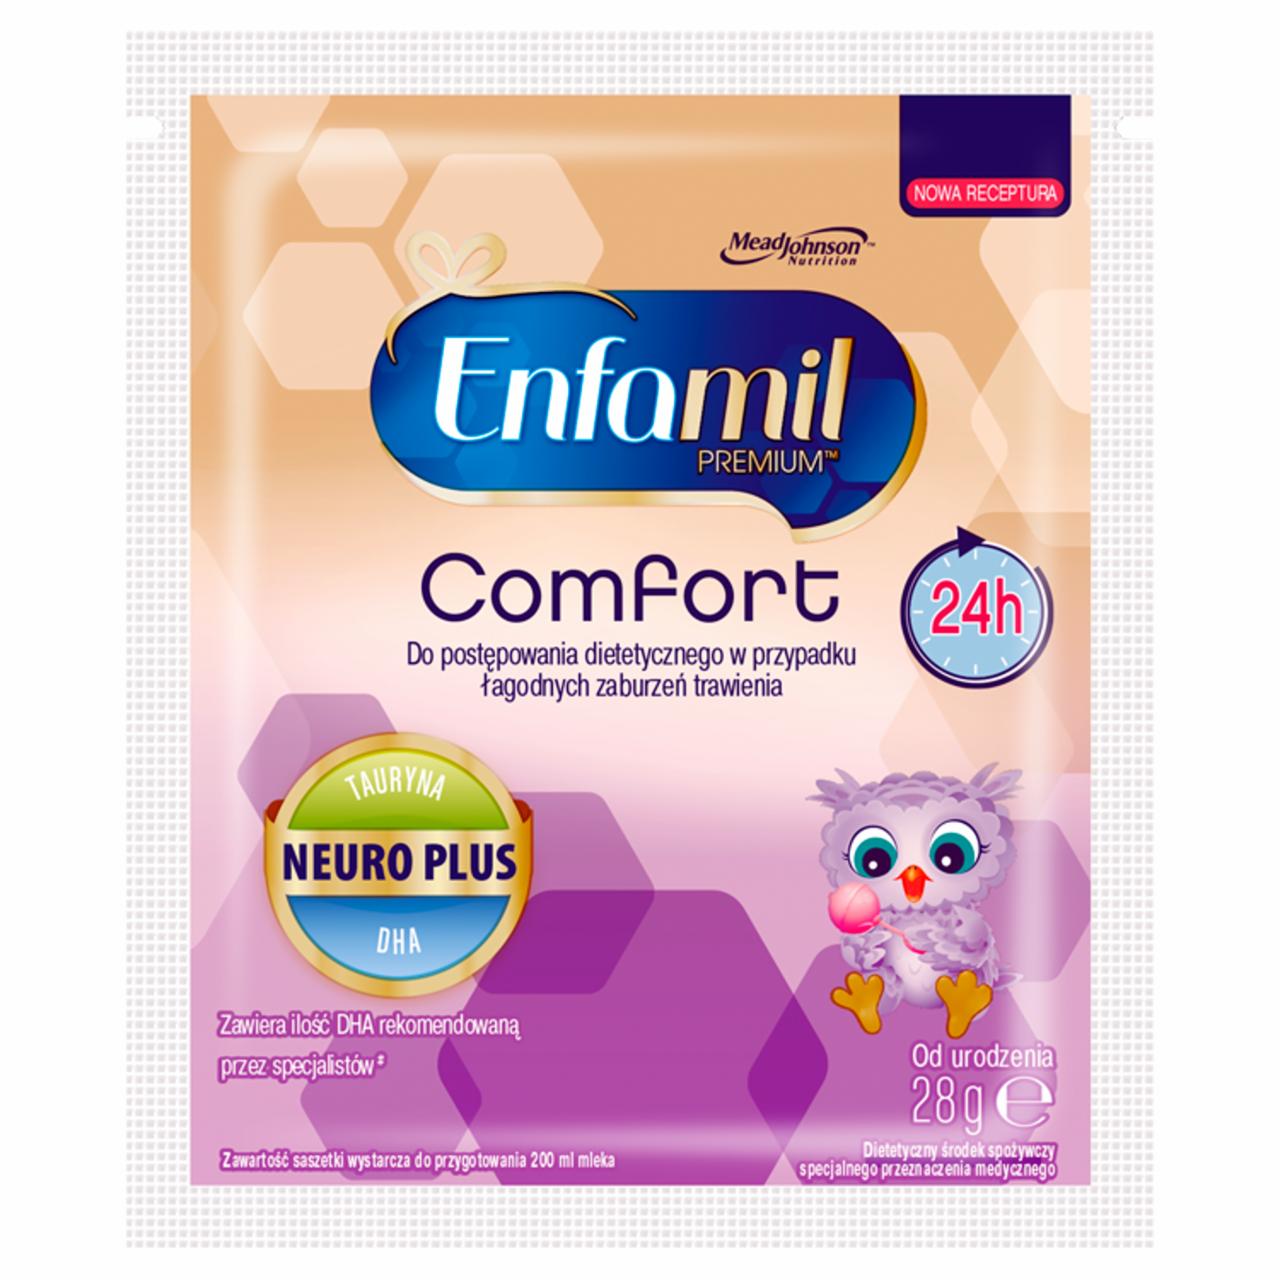 Zdjęcia - Enfamil Premium Comfort Dietetyczny środek spożywczy od urodzenia 28 g